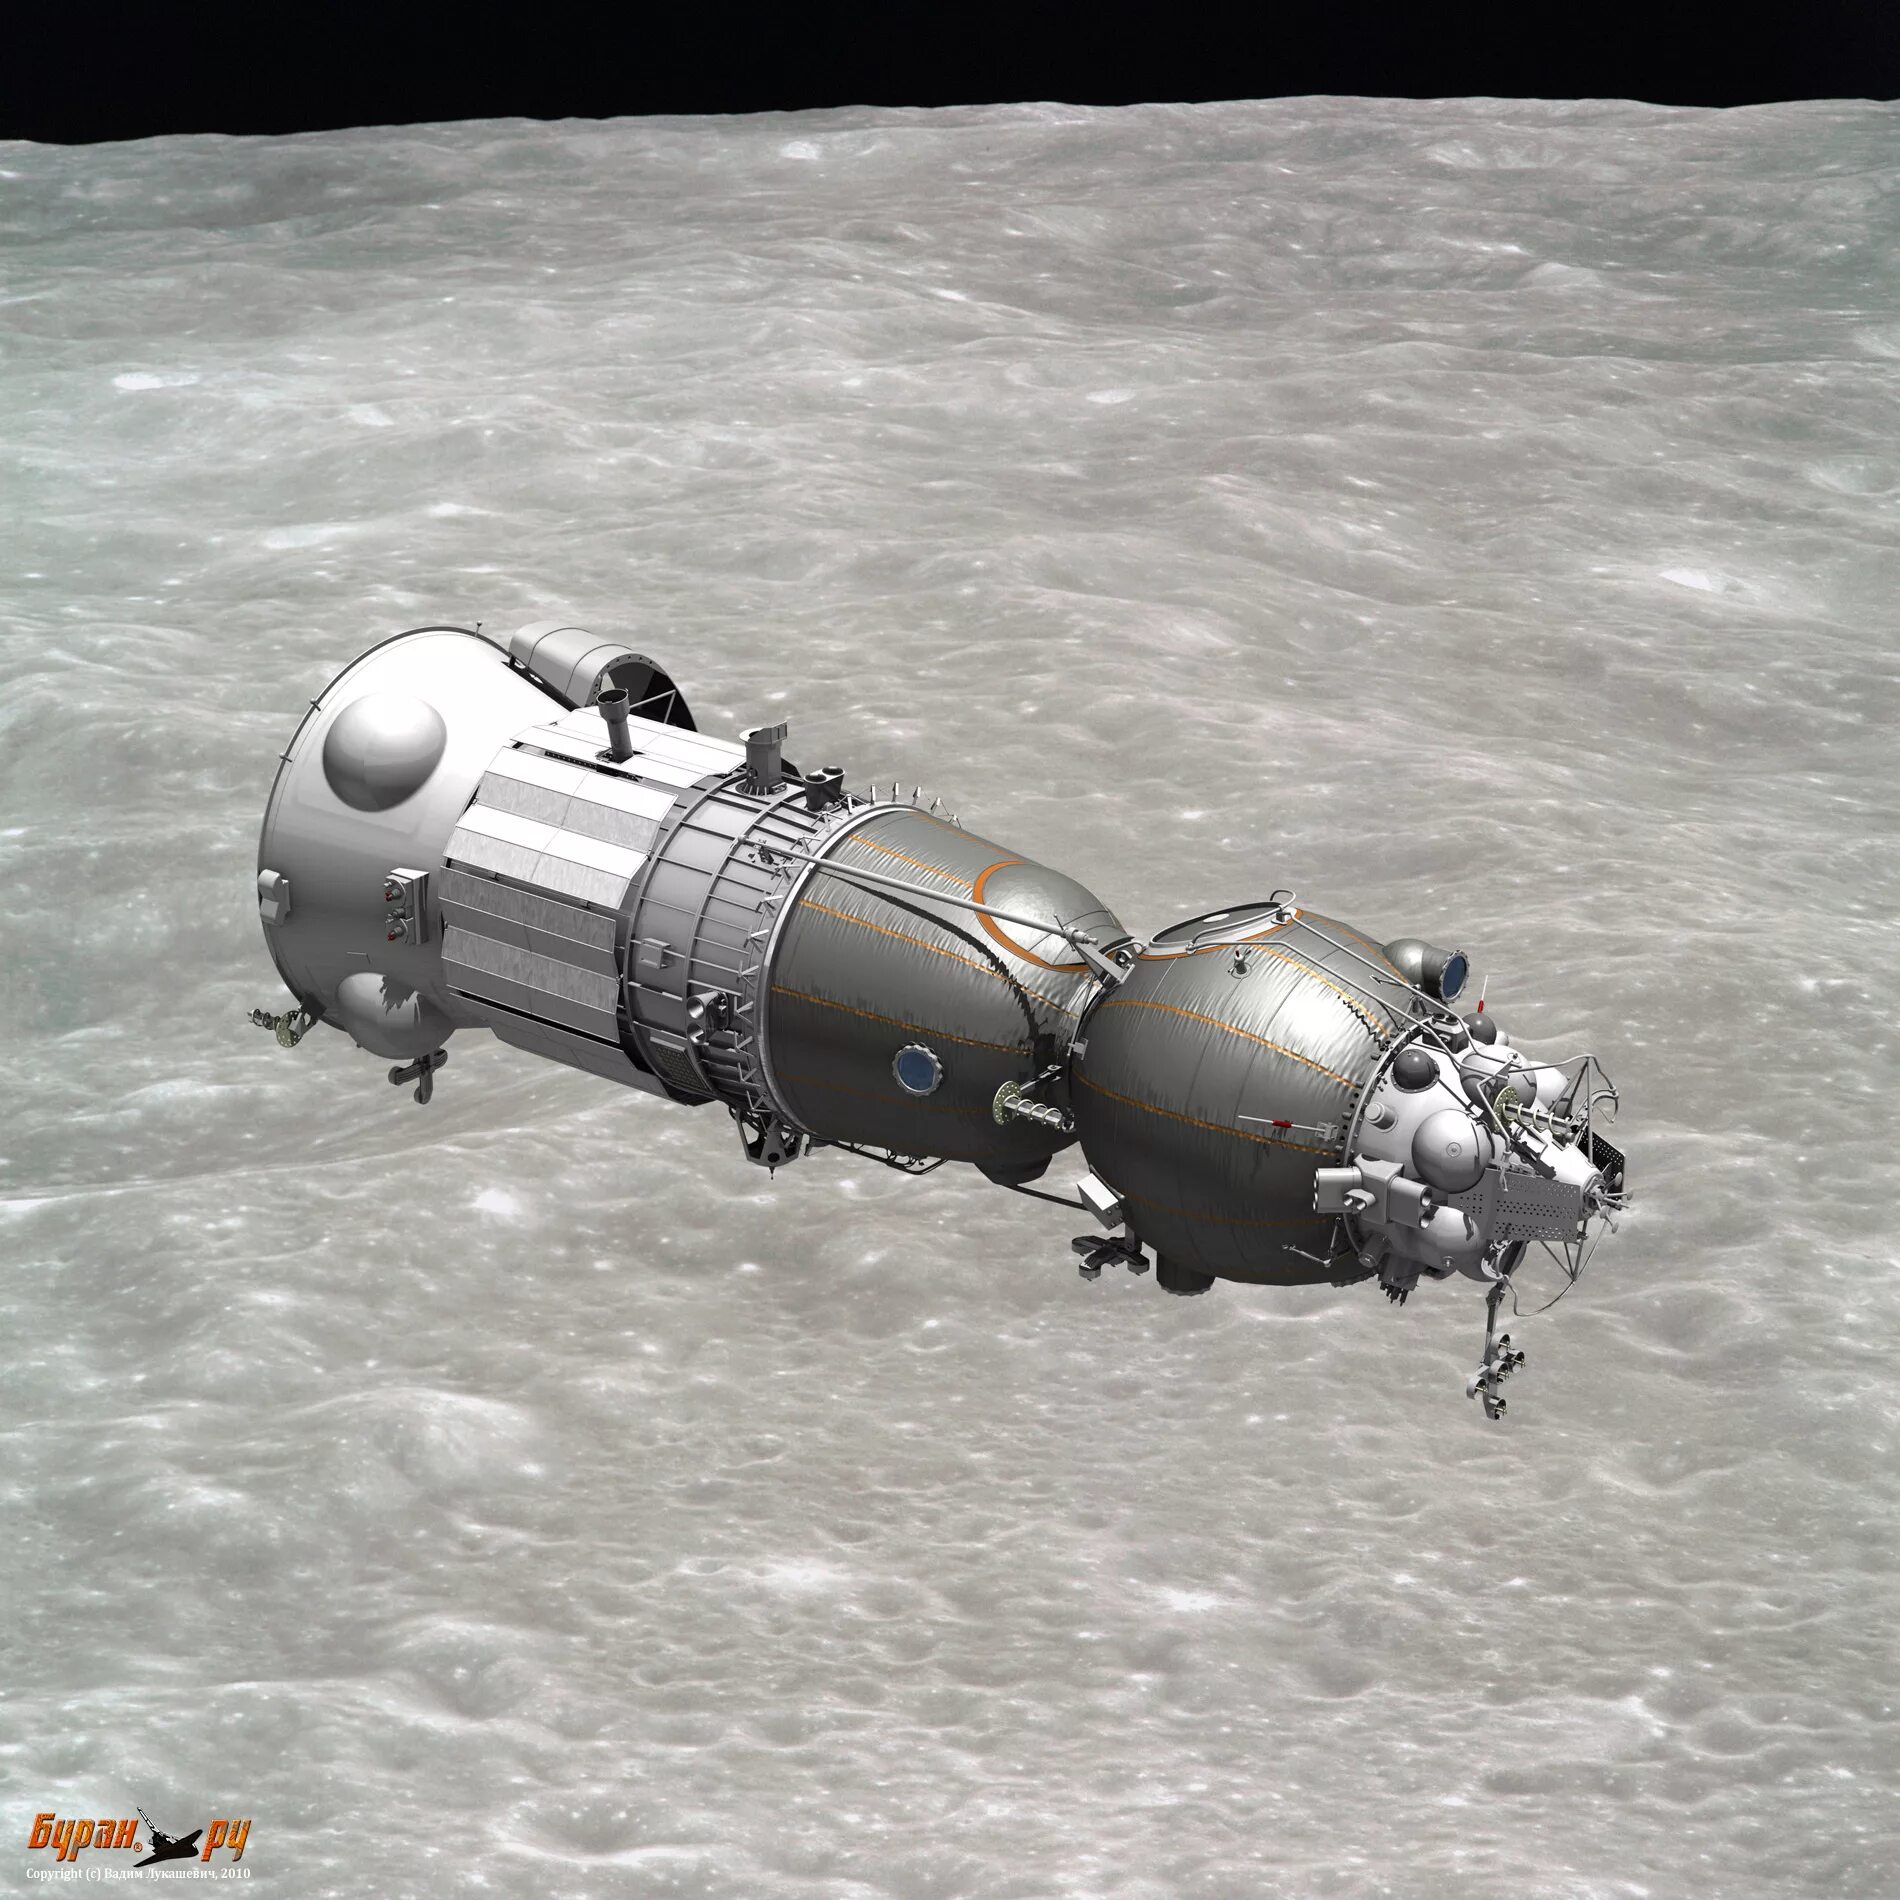 Союз 7к-лок. Лунный орбитальный корабль (лок, 11ф93). Космический корабль 7к Союз лок. Лунный орбитальный корабль СССР. Лк т